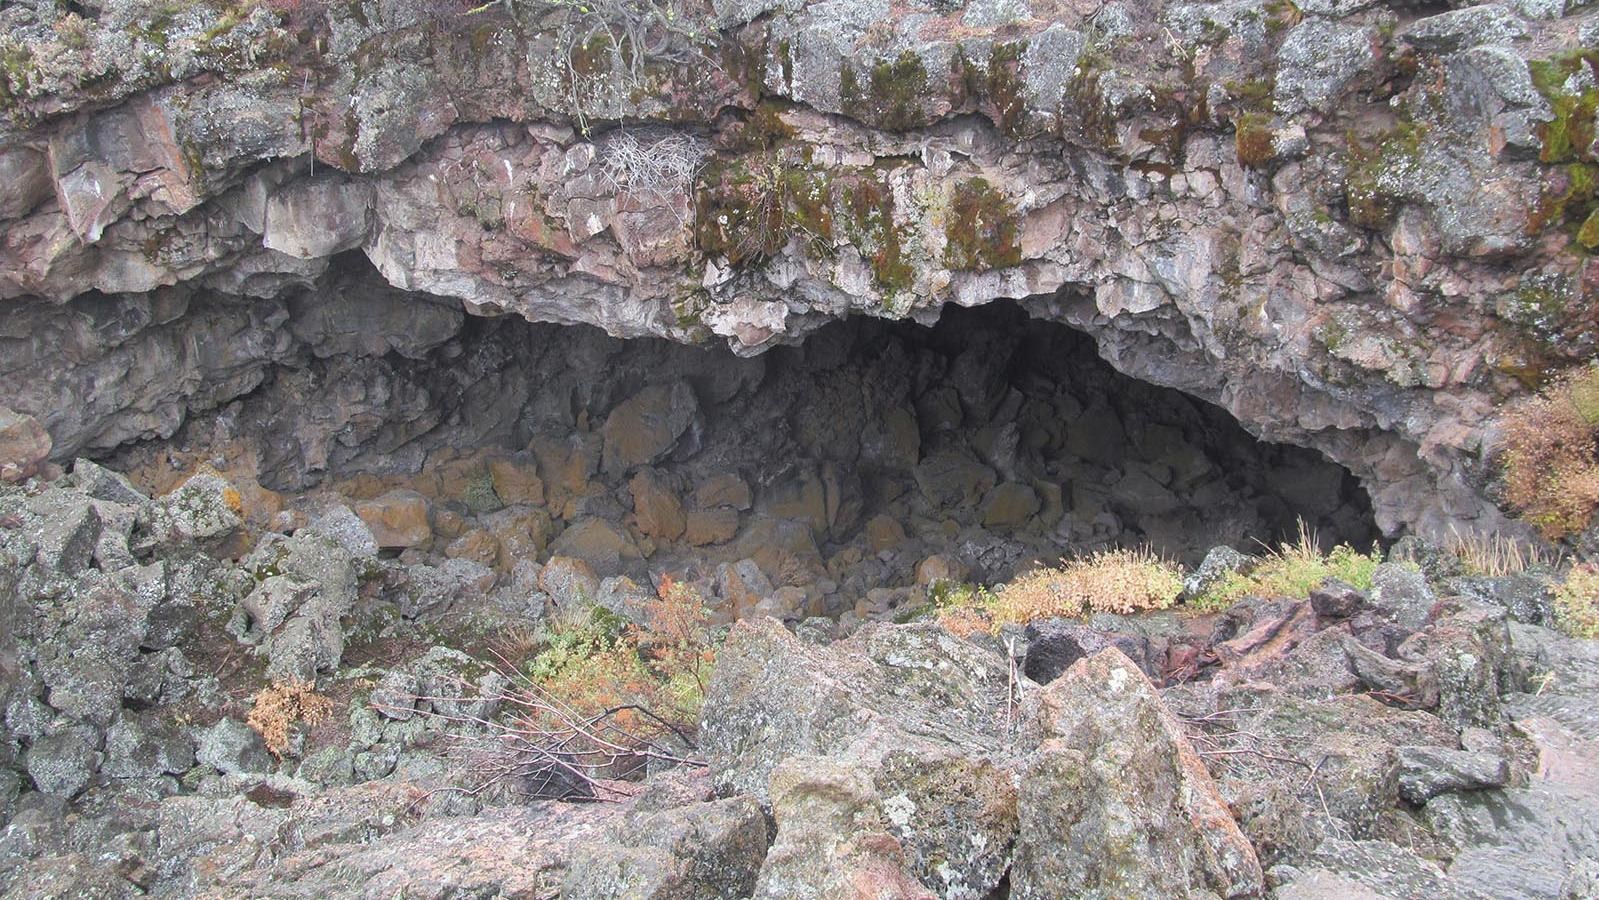 Ovis Cave entrance